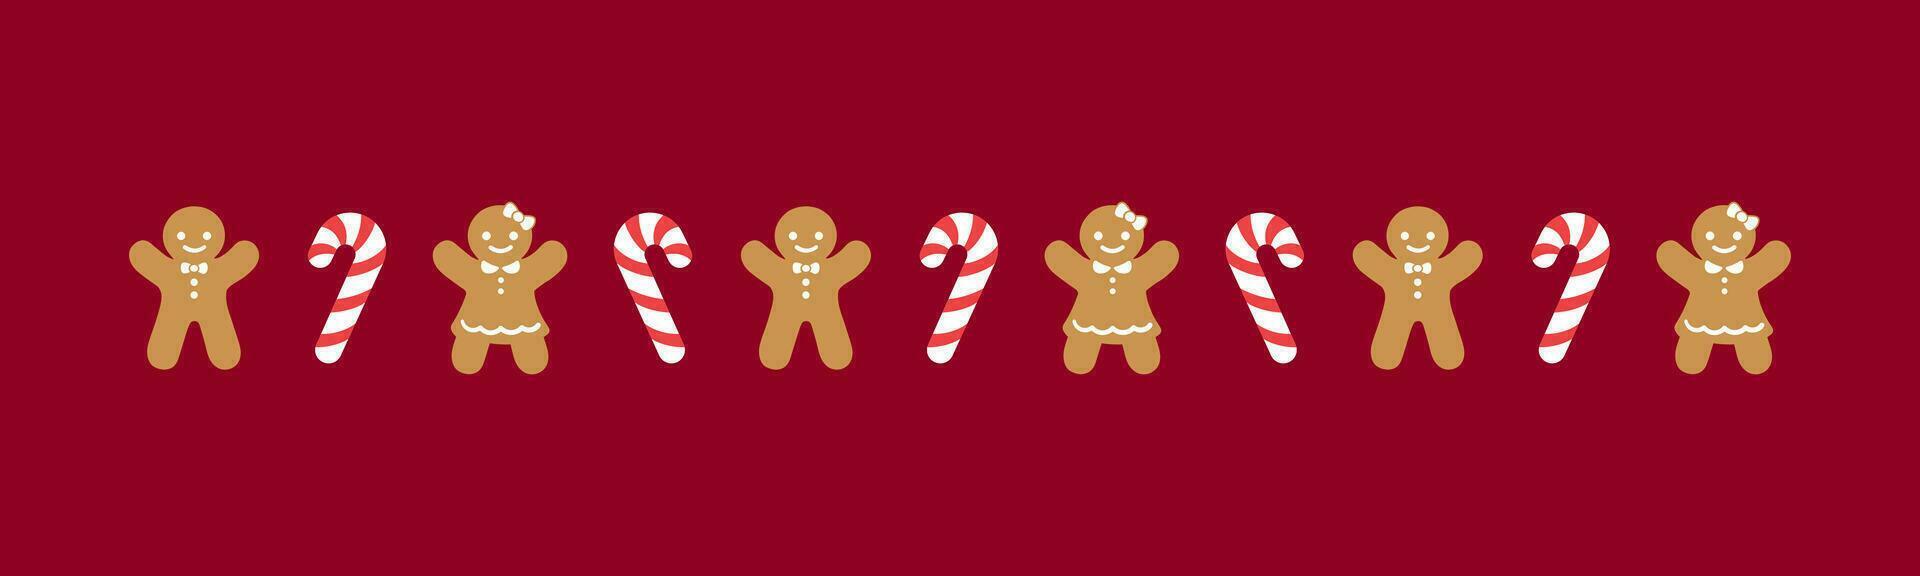 Navidad temática decorativo frontera y texto divisor, pan de jengibre galletas y caramelo caña modelo. vector ilustración.